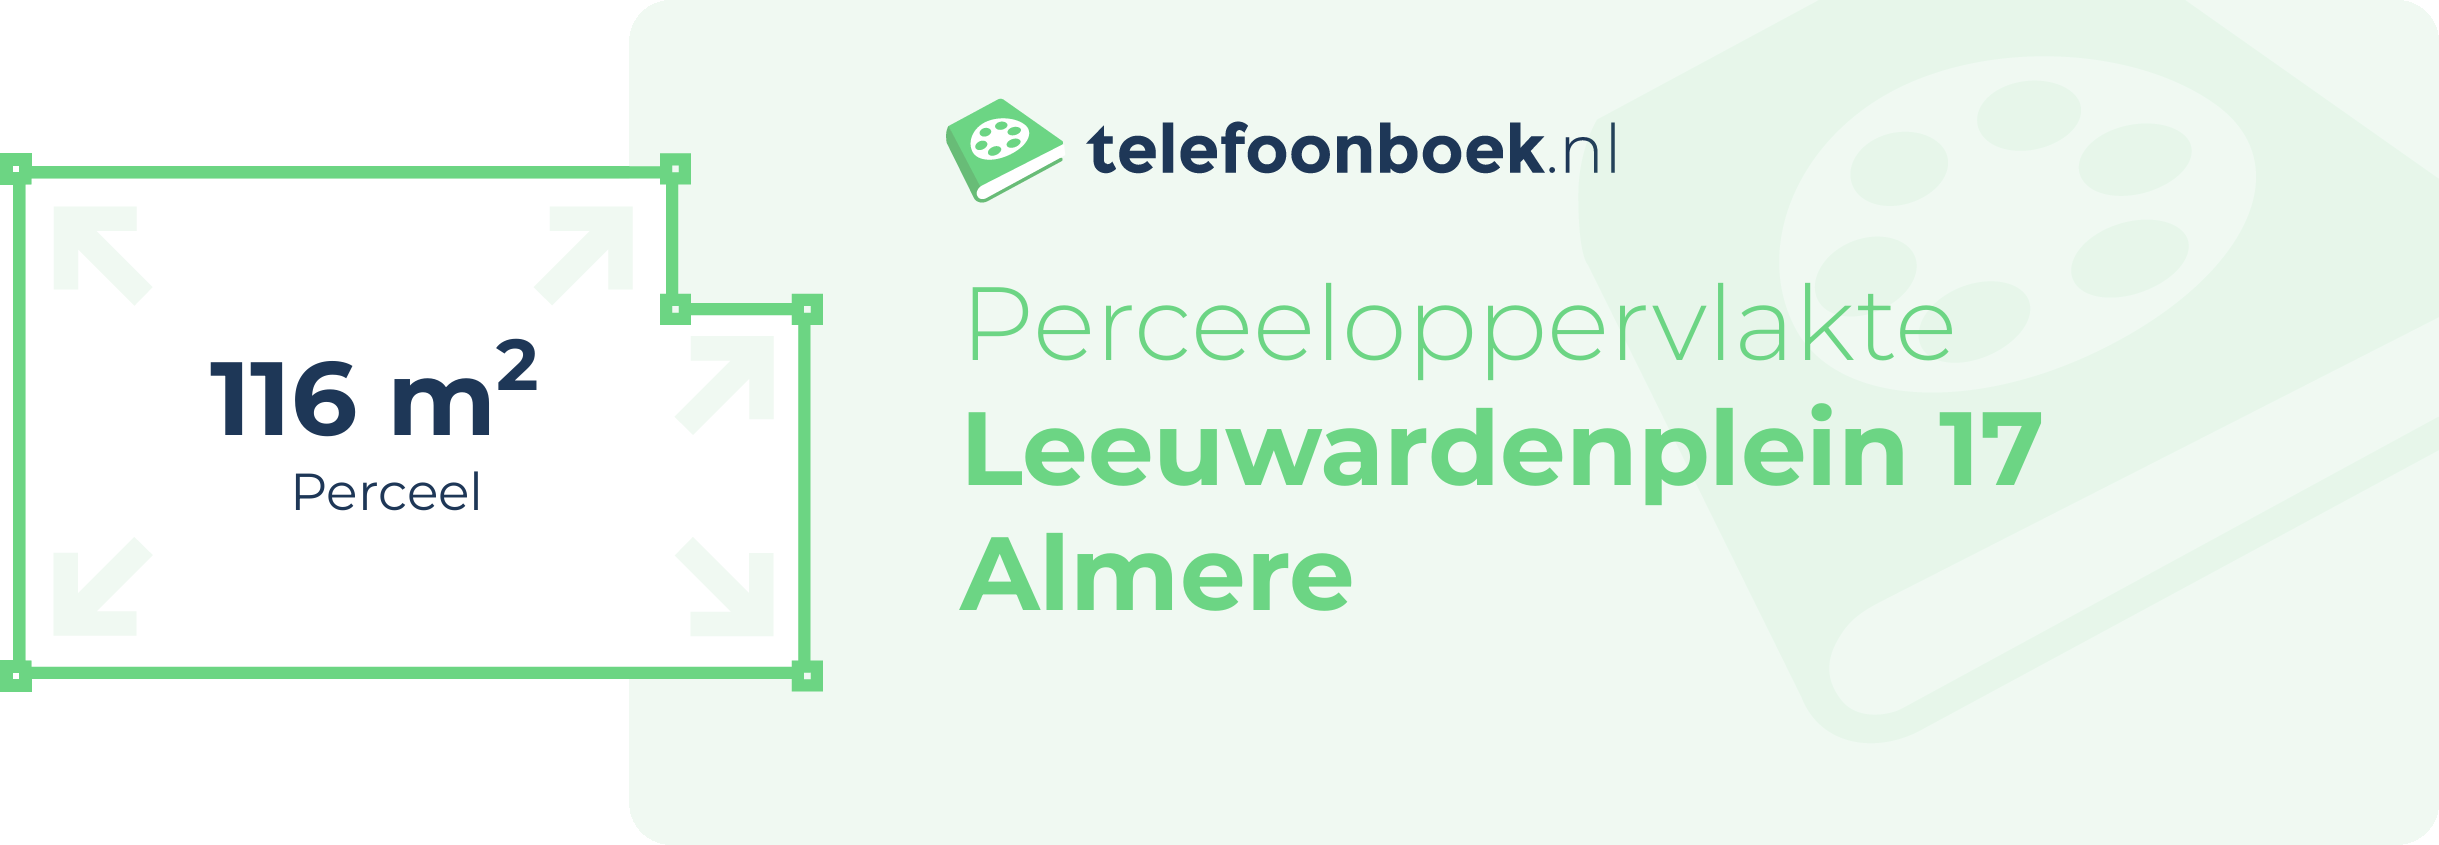 Perceeloppervlakte Leeuwardenplein 17 Almere